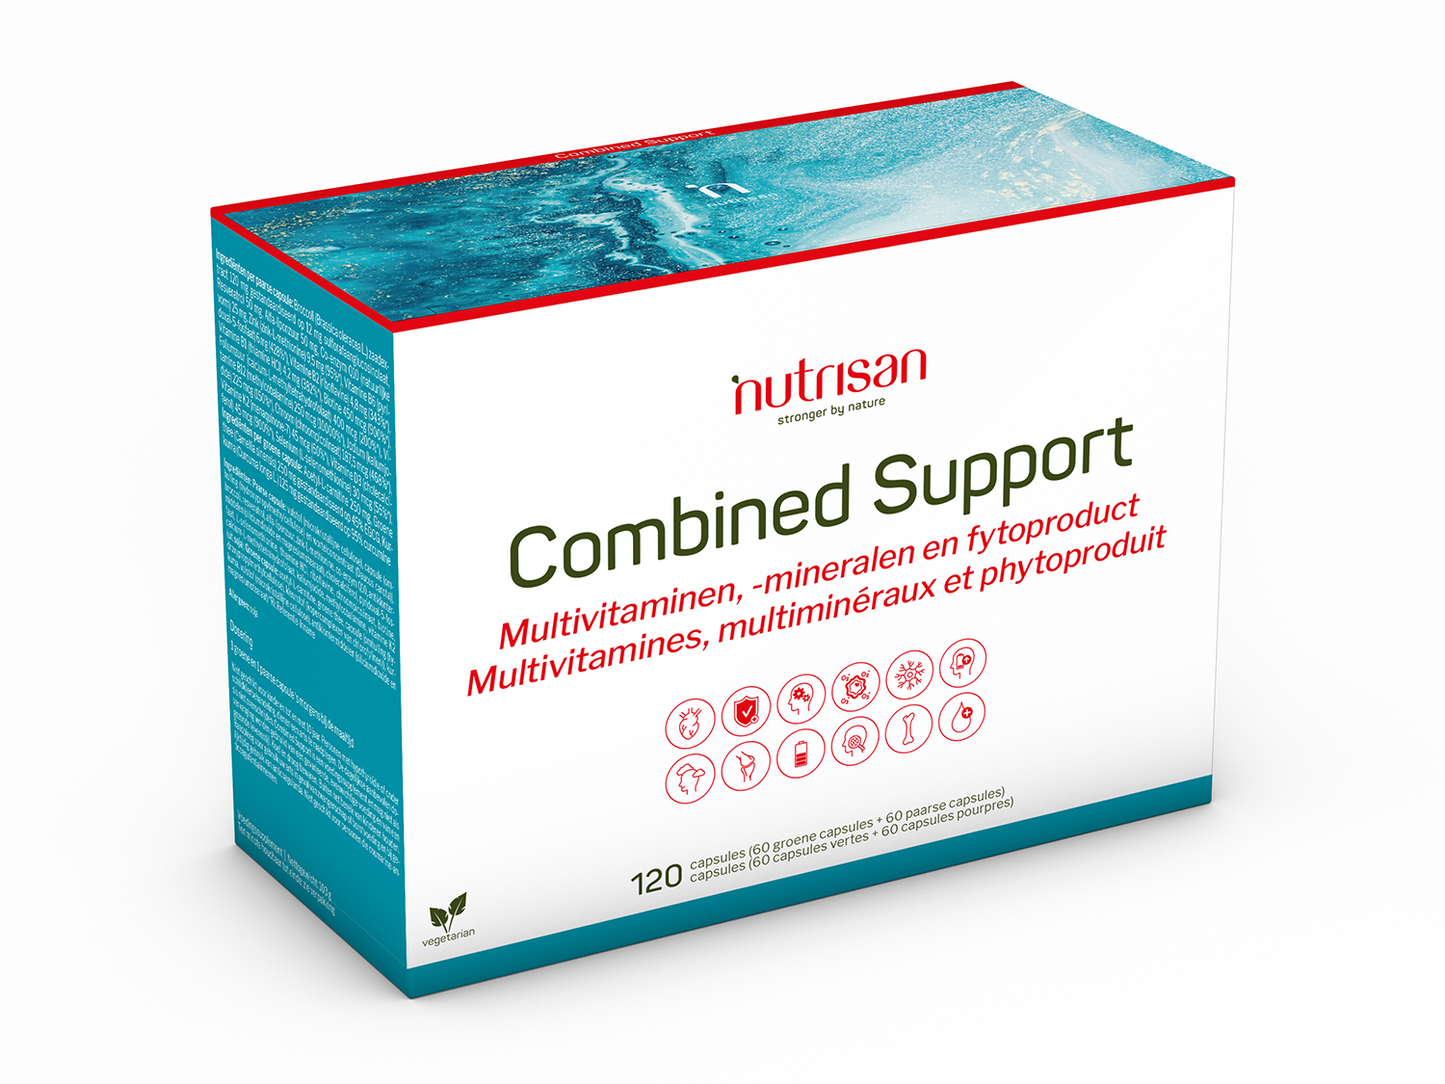 Nutrisan Combined Support - 120 capsules -  Multivitaminen, mineralen en fytoproduct supplement